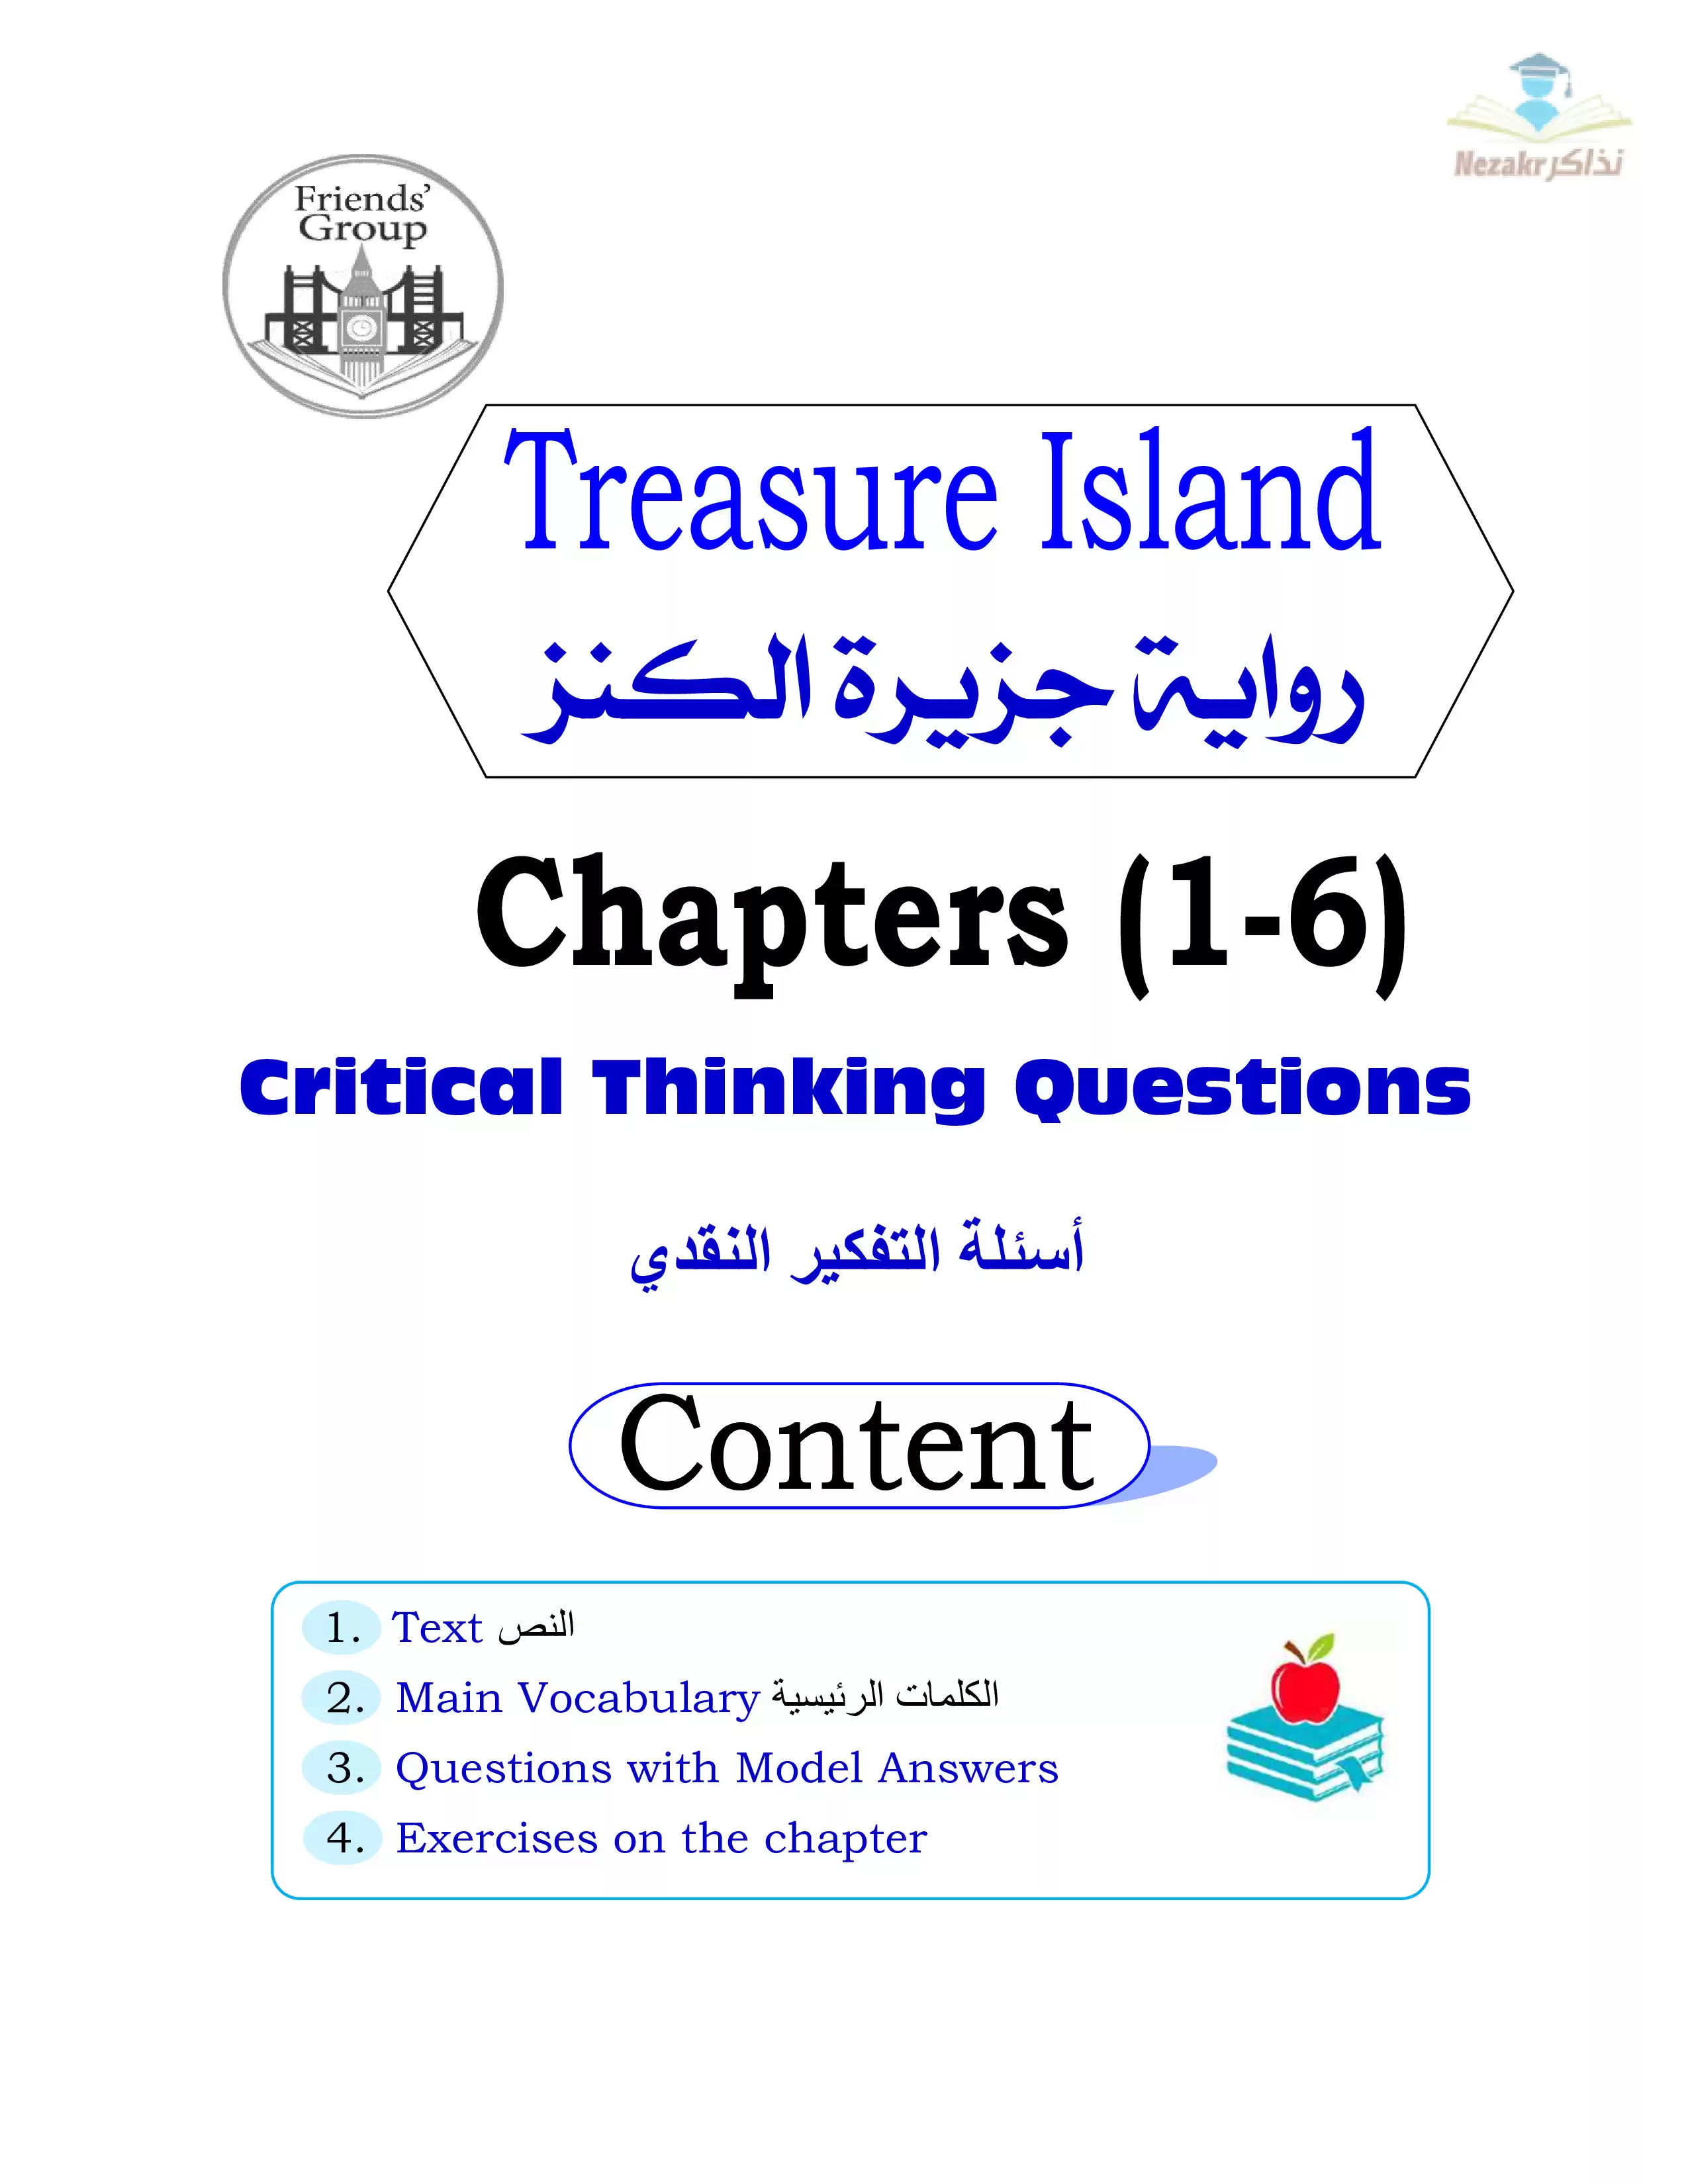 تحميل مذكرة شرح وأسئلة مجابة على قصة ورواية جزيرة الكنز الفصل الدراسي الأول للصف الأول الثانوي